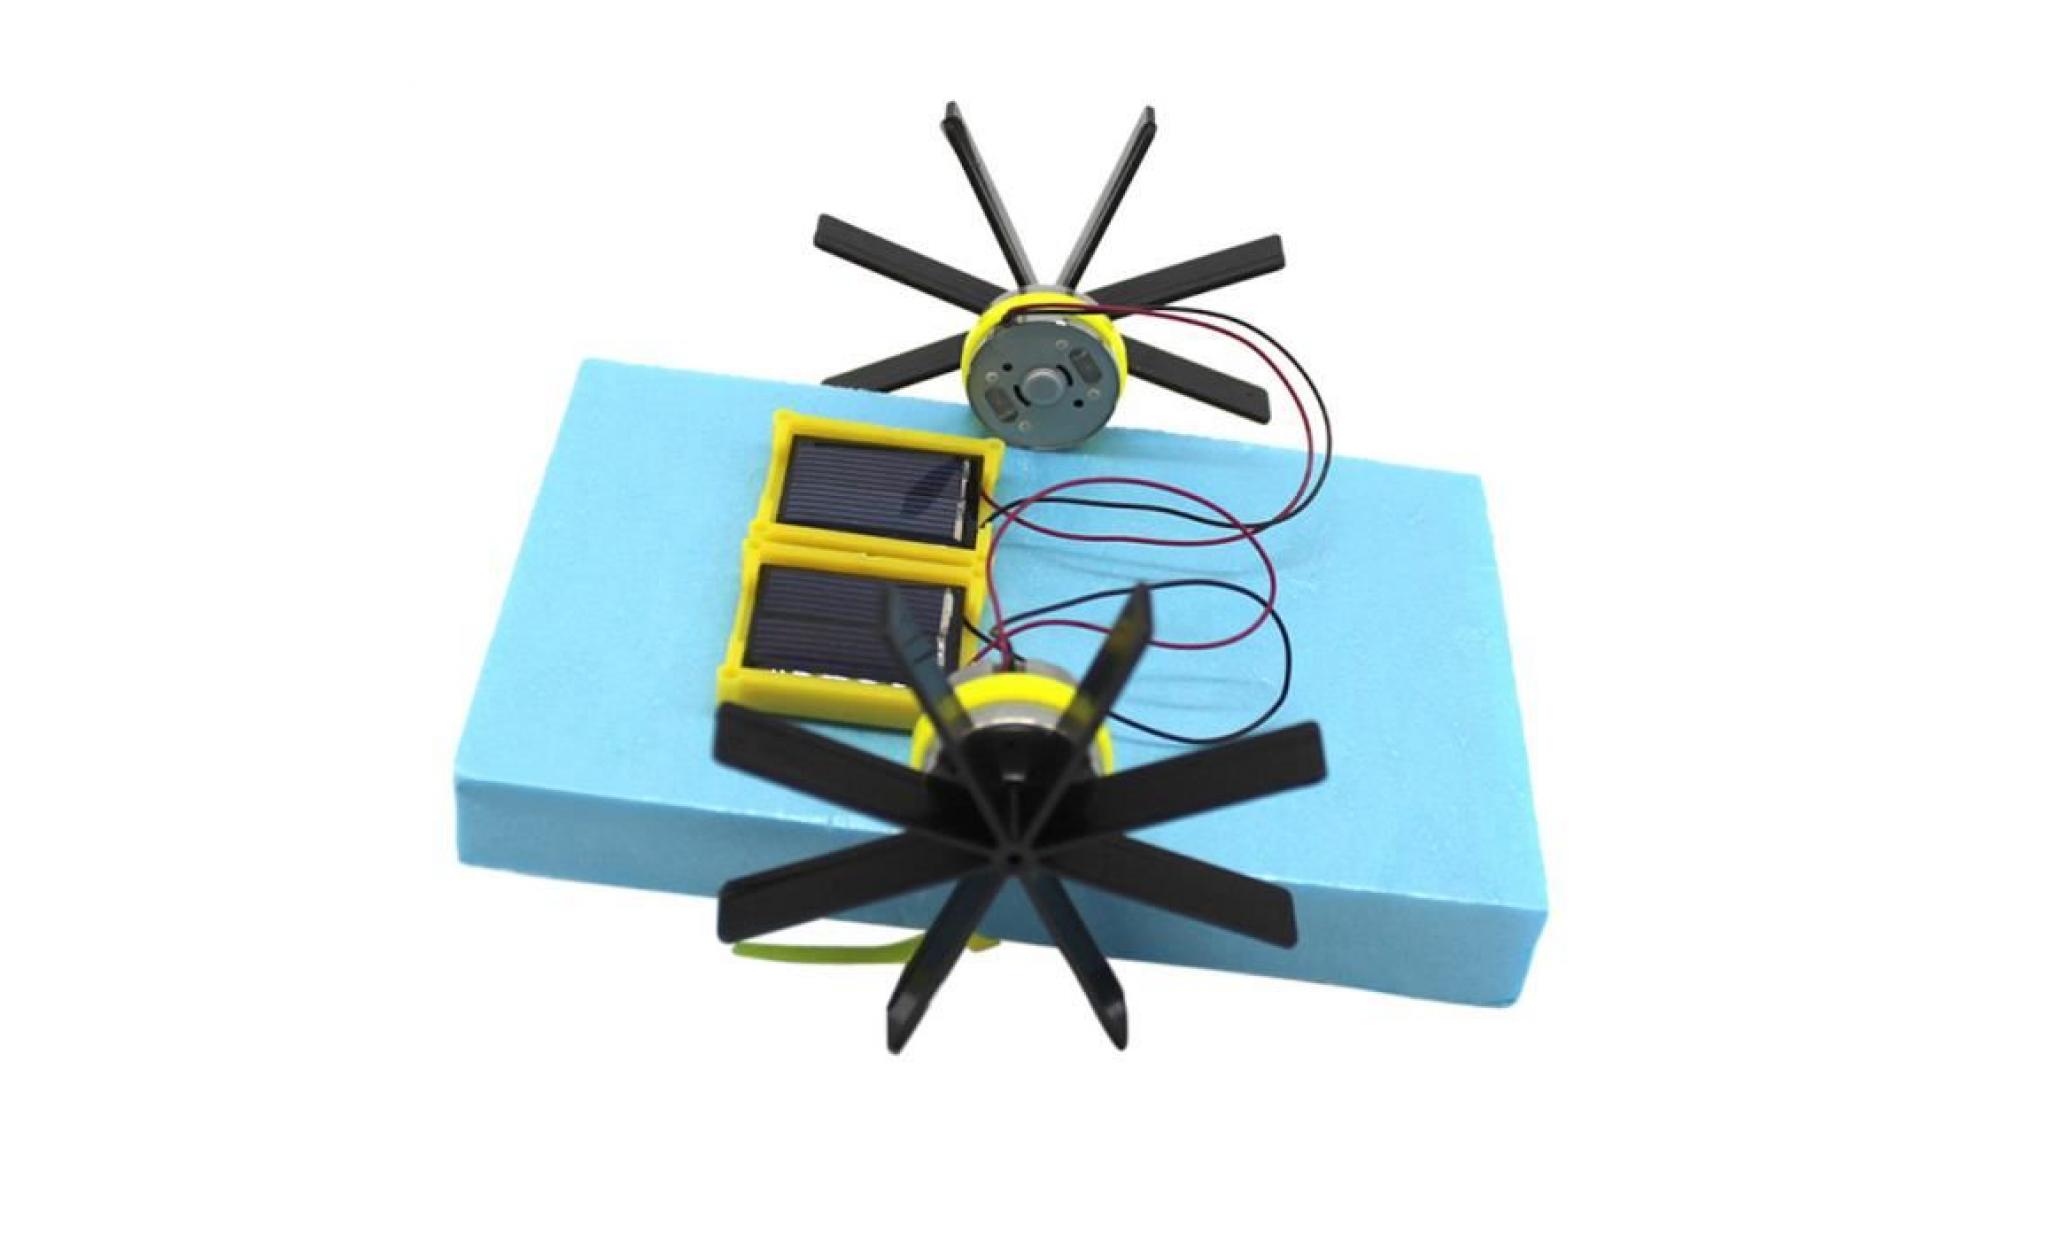 bricolage mini solaire actionné solaire bateau paddle jouet éducatif gadget 970